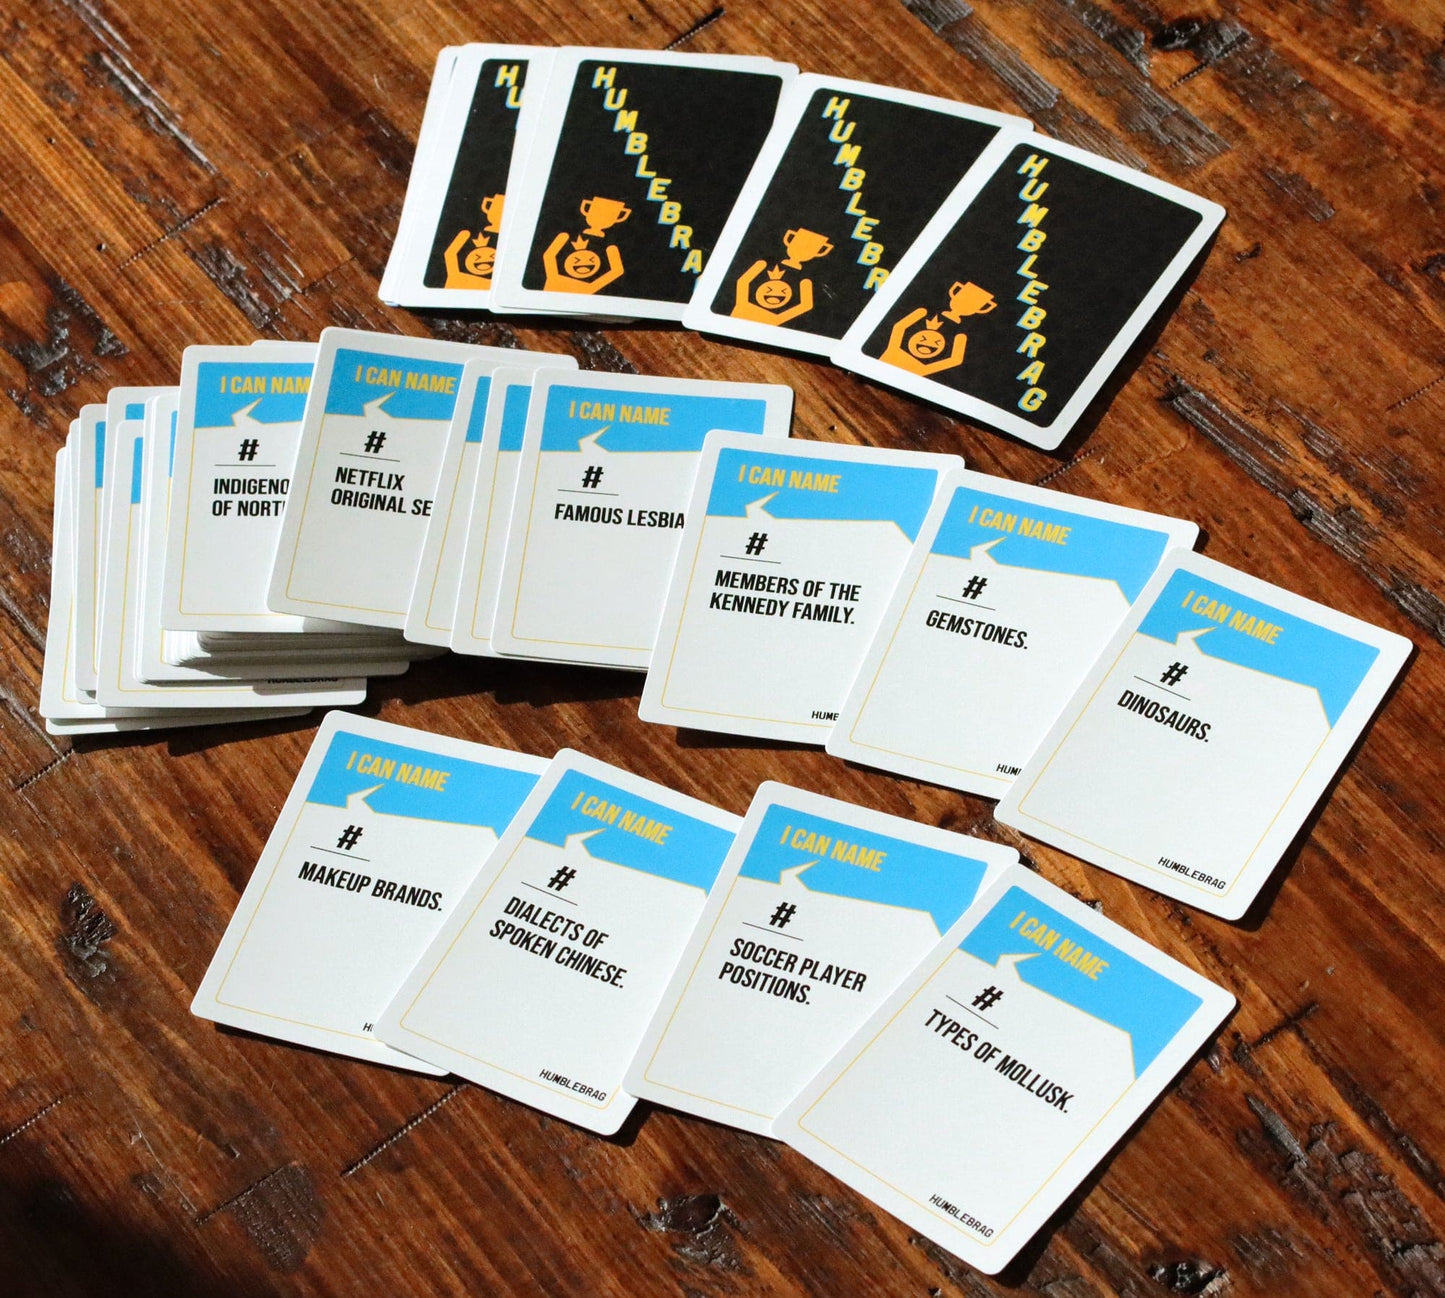 
                  
                    Humblebrag Game | The Bluffing, Boasting, Trivia Card Game
                  
                